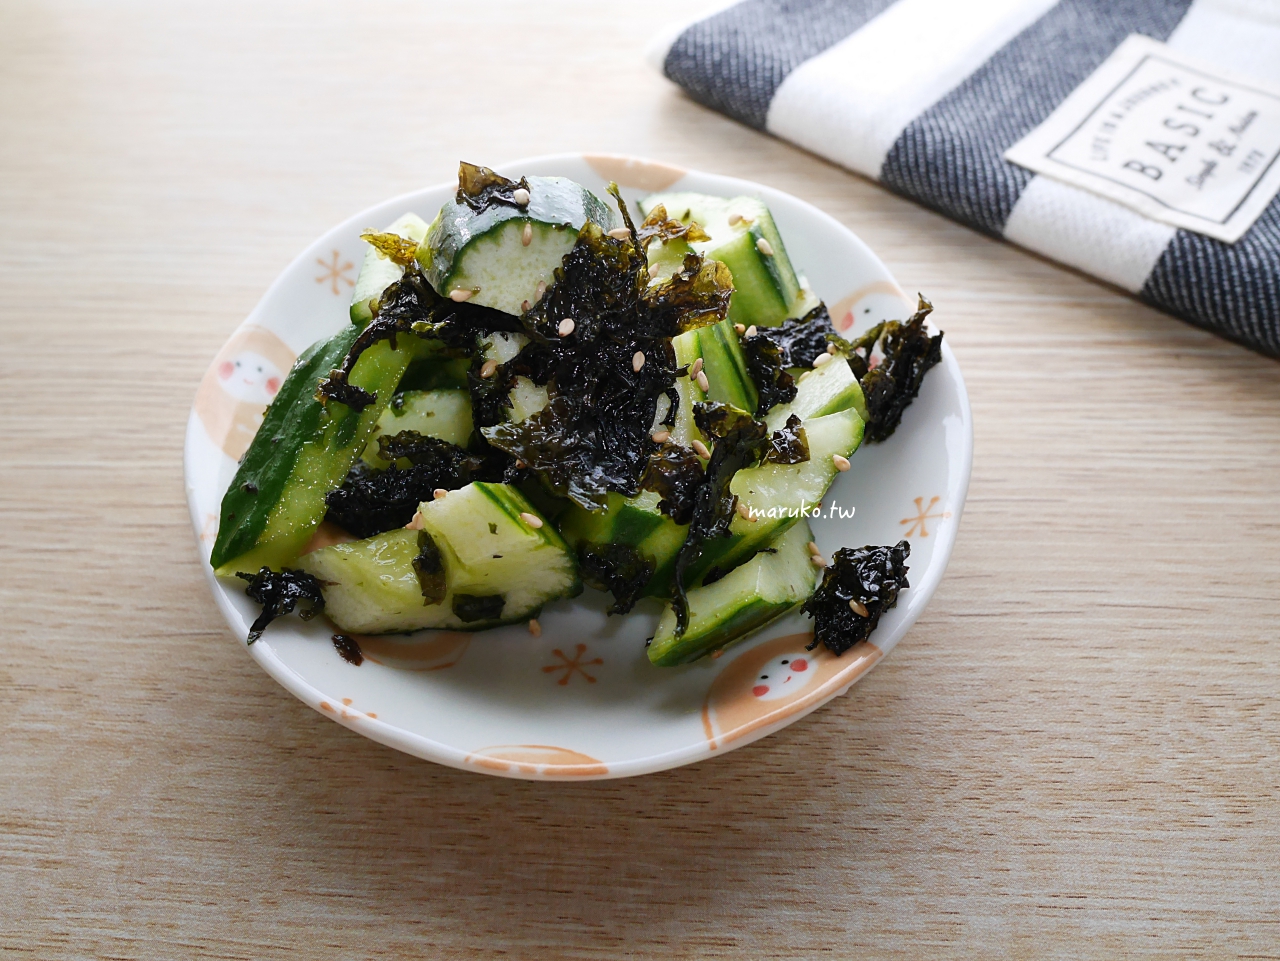 【食譜】韓式海苔涼拌小黃瓜 3分鐘上菜 簡單免開火創意料理